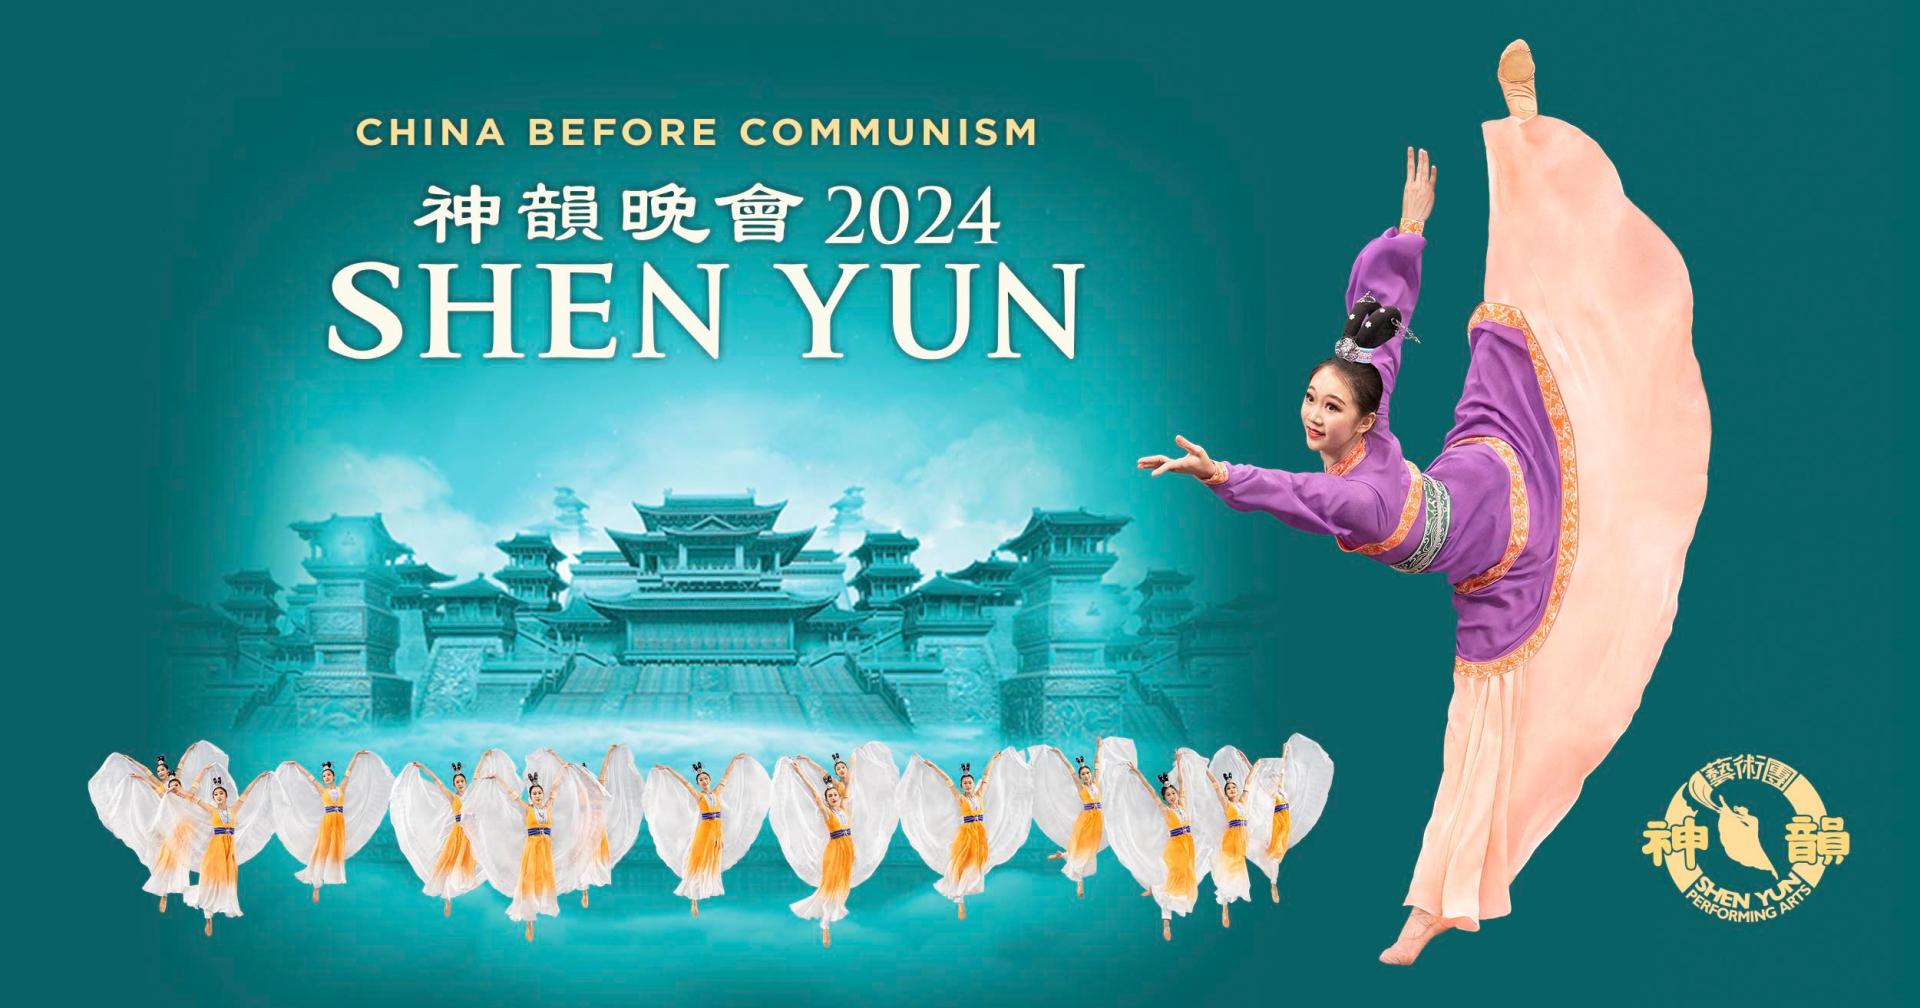 Shen yun 2024